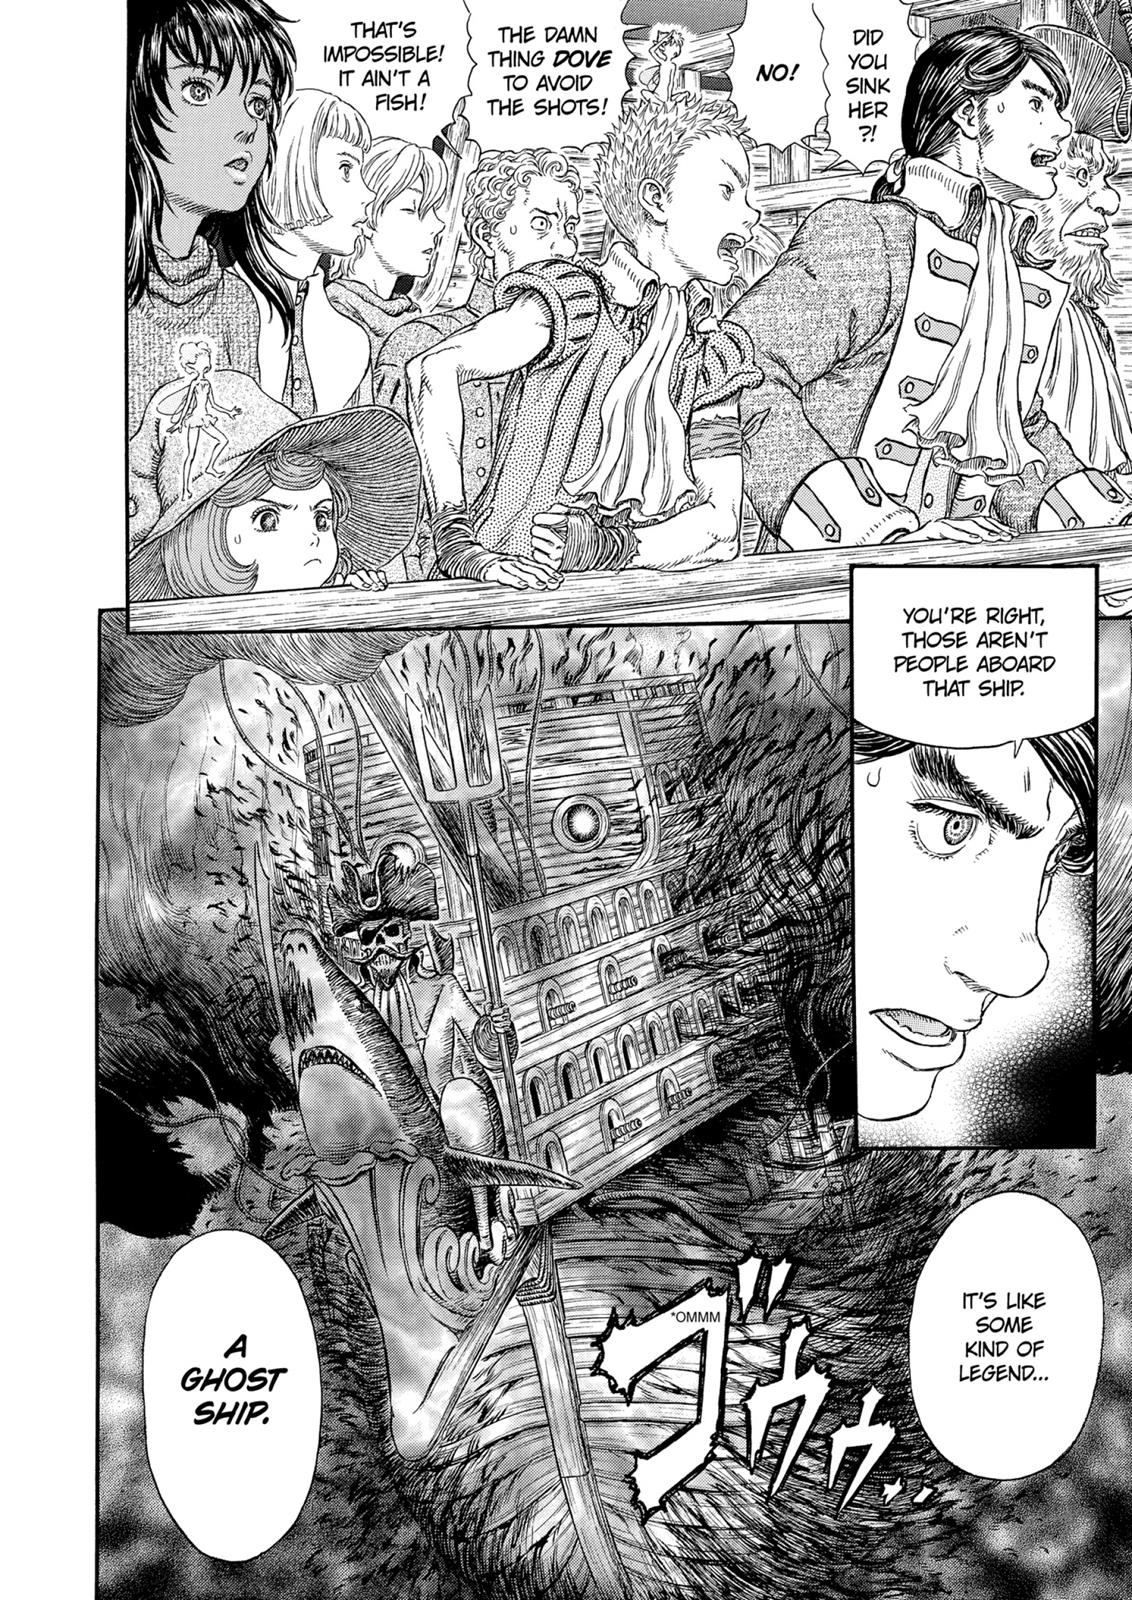 Berserk Manga Chapter 308 image 18